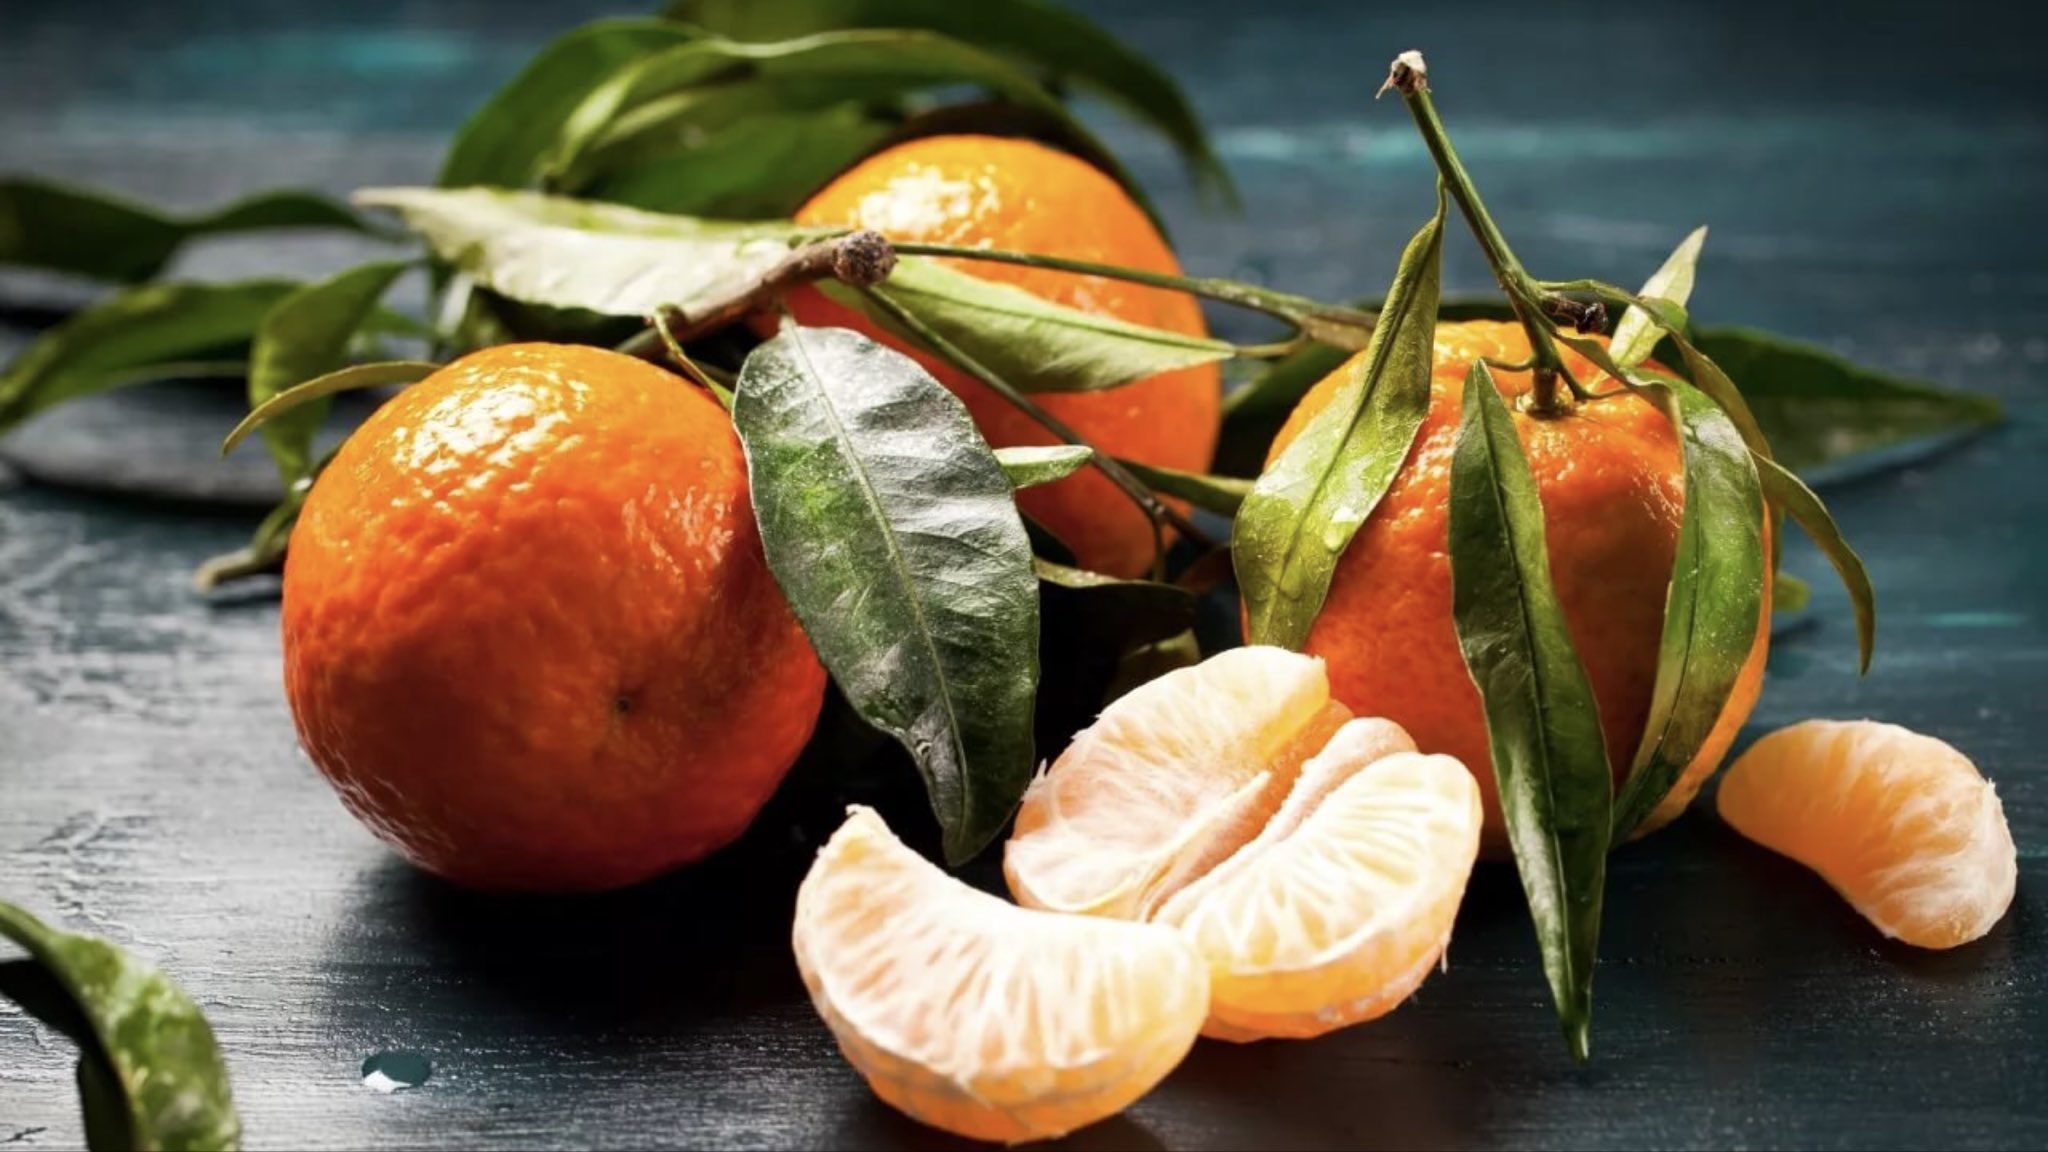 البرتقال وقشر البرتقال كنز في البيت اعرف فوائده واستخدمه في بيتك لتعزيز صحتك وصحة أولادك